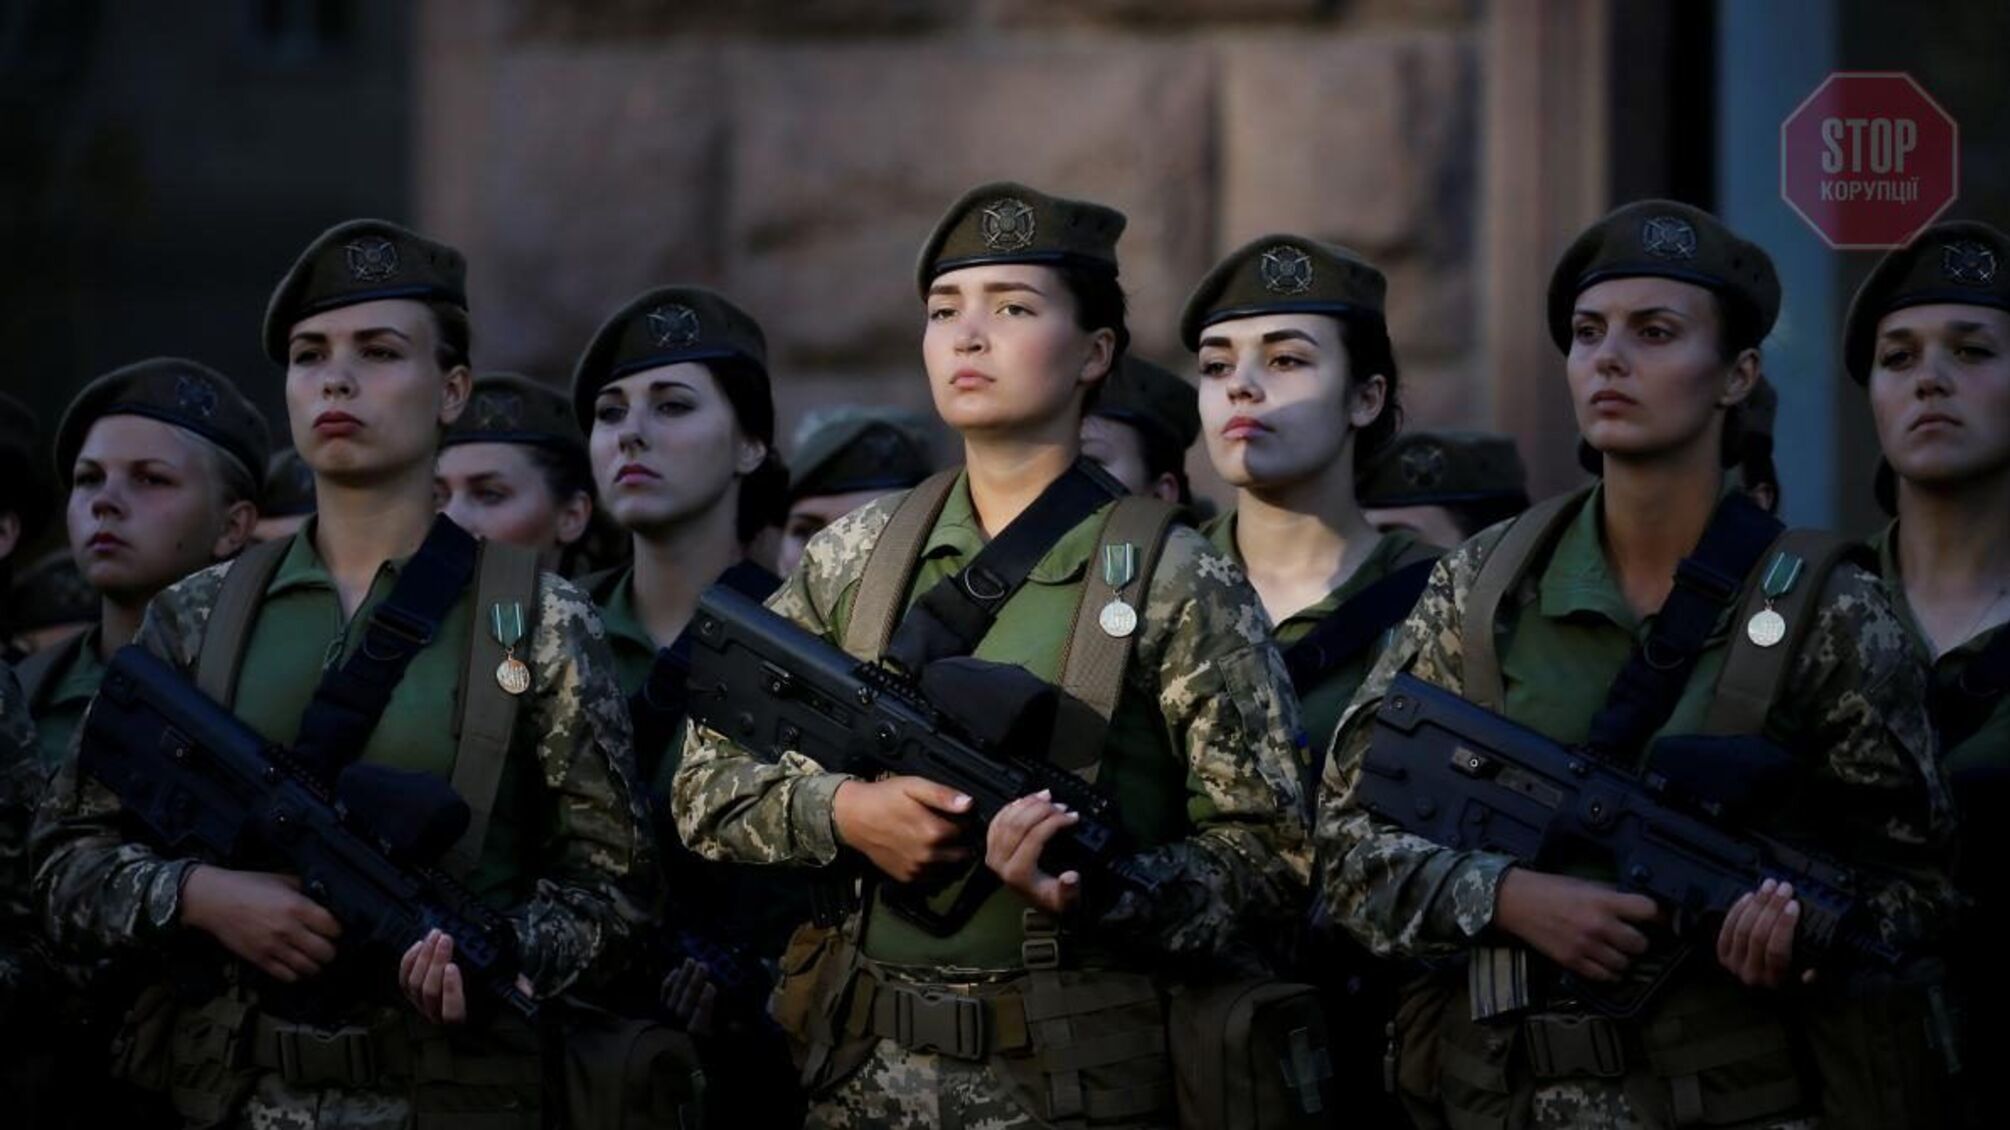 Міноборони скоротило перелік професій для жінок з обов'язковим військовим обліком